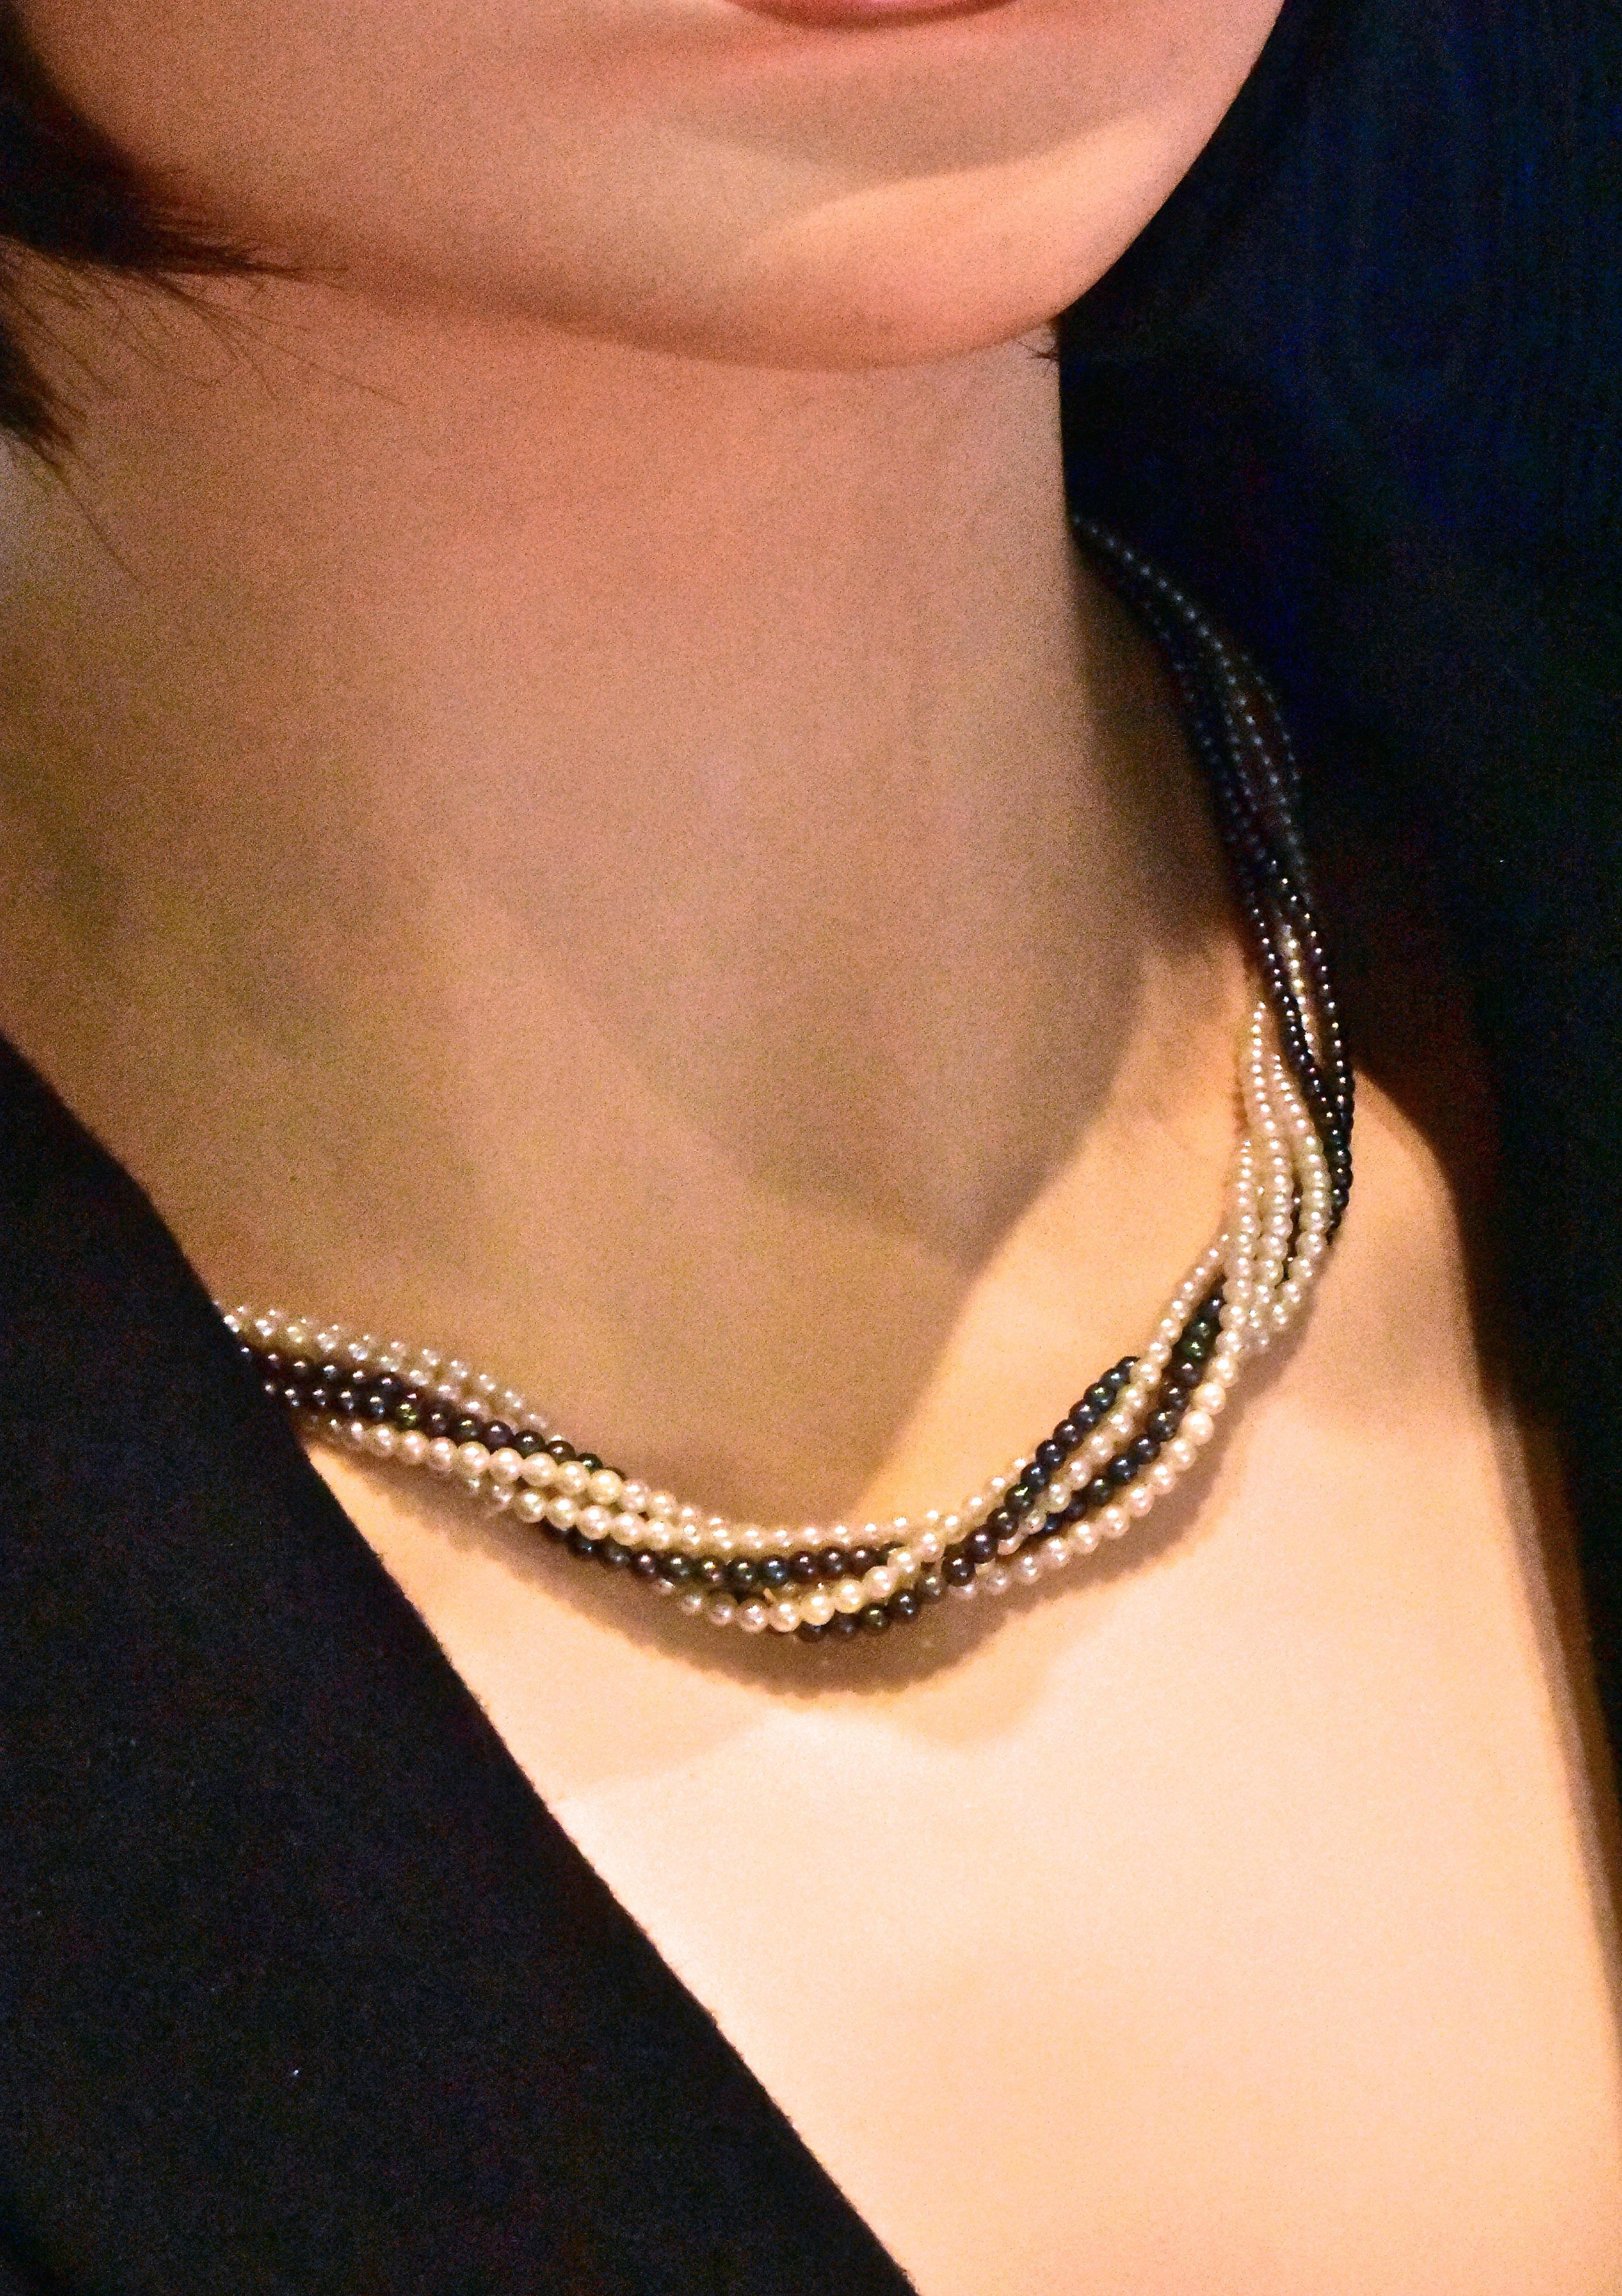 Feine Perlenkette, die sowohl feine weiße Perlen als auch schwarze Perlen enthält. Diese Perlen haben eine Größe von 2,5 mm bis 3,0 mm. Man kann diese schöne Halskette leicht gedreht oder mehr tragen, je nachdem, wie lang man sie haben möchte. In